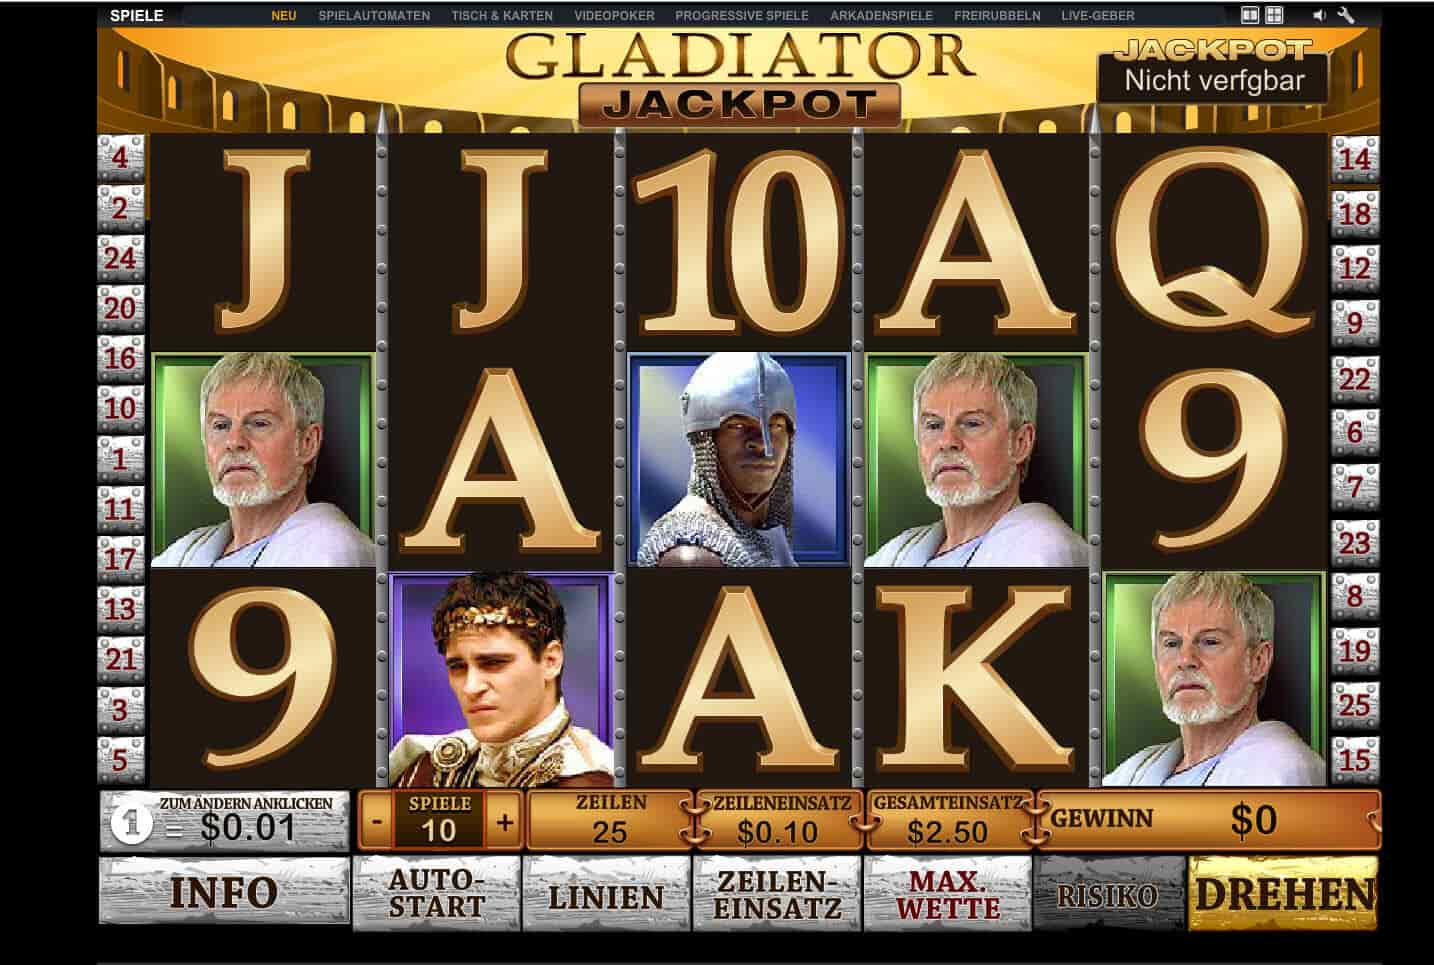 gladiator jackpot